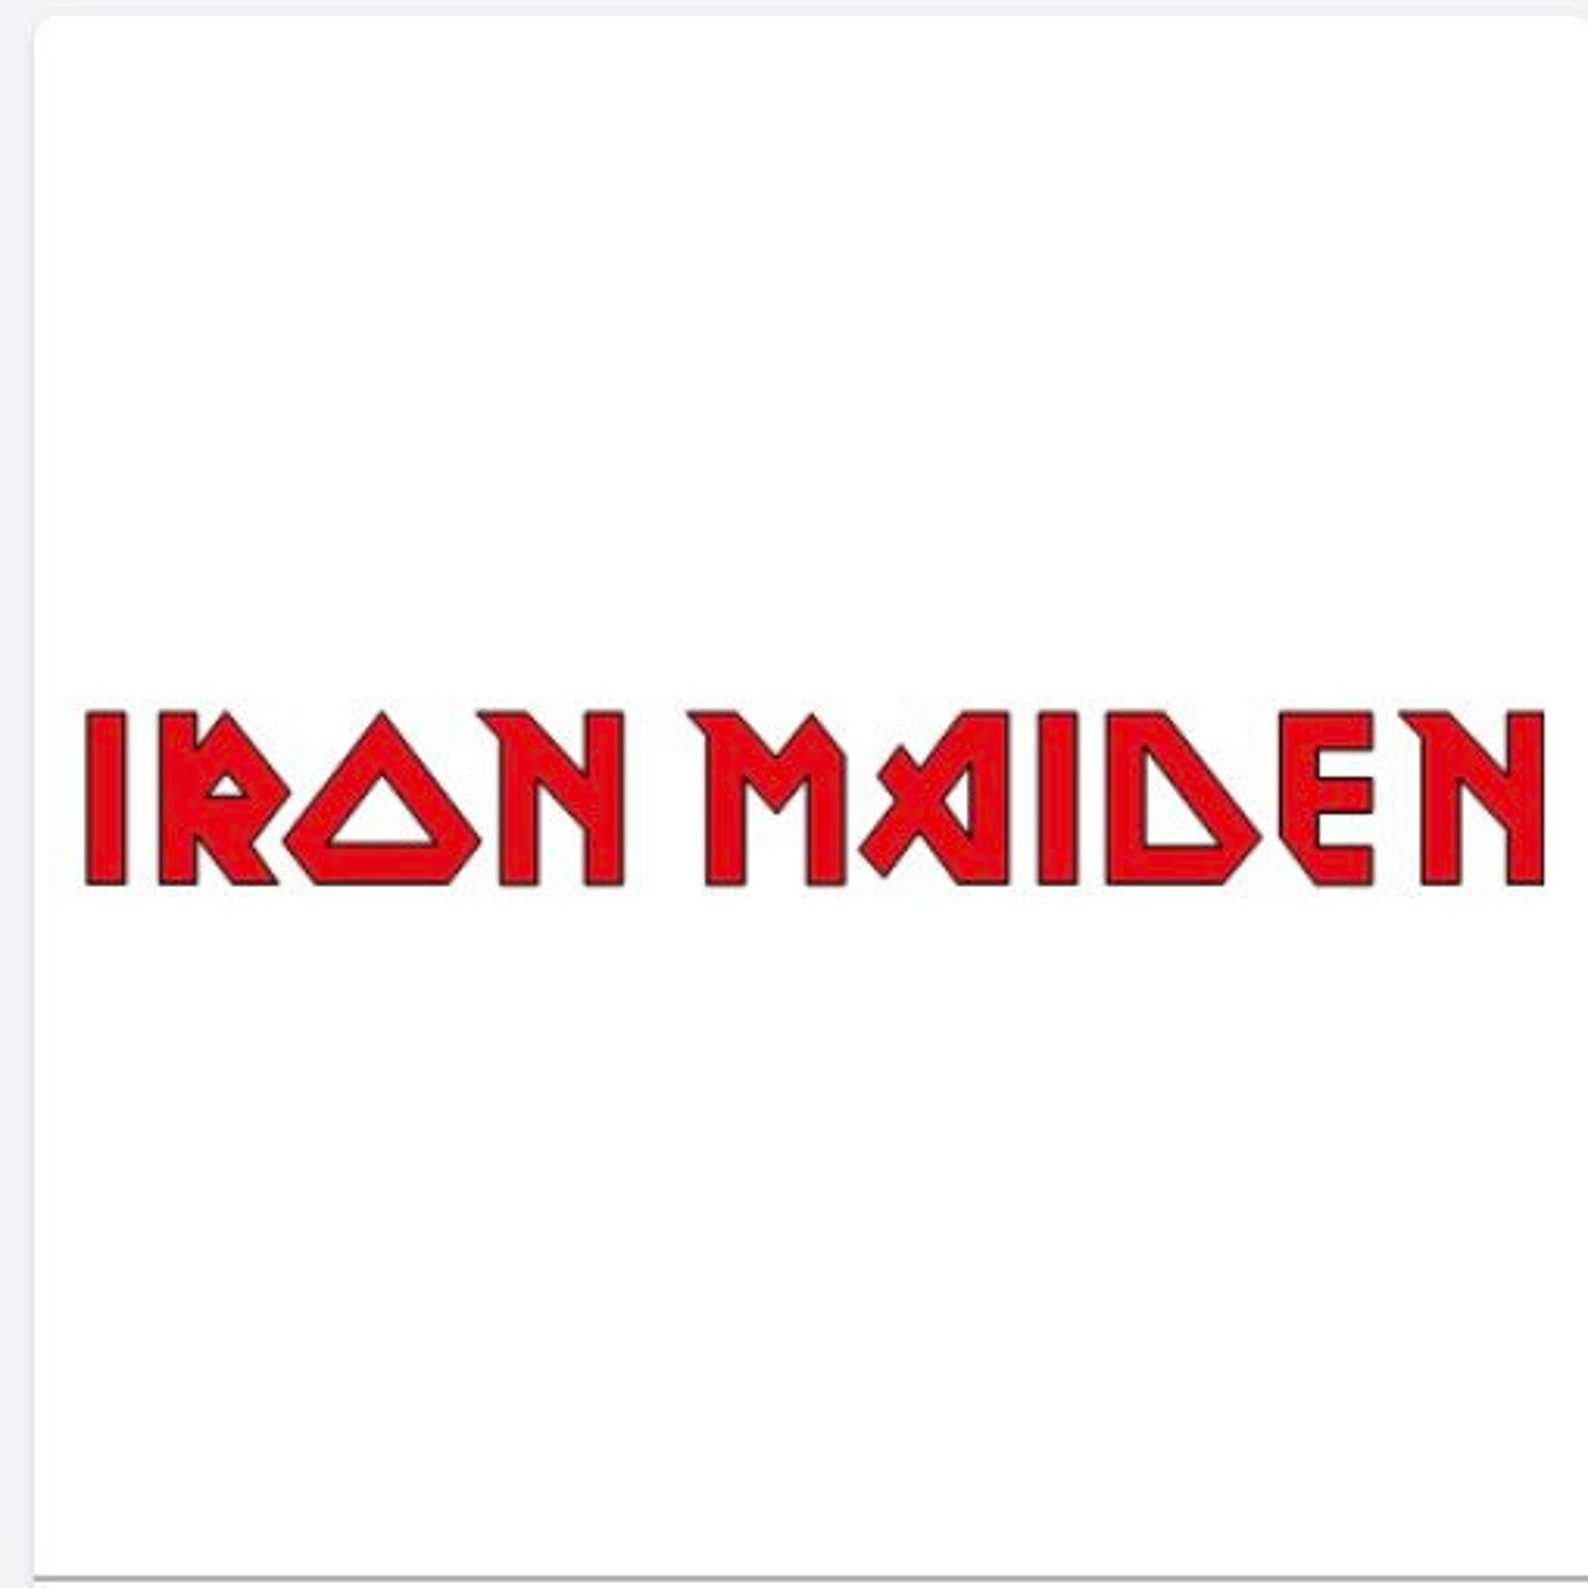 Iron Maiden Vinyl Decal - Etsy